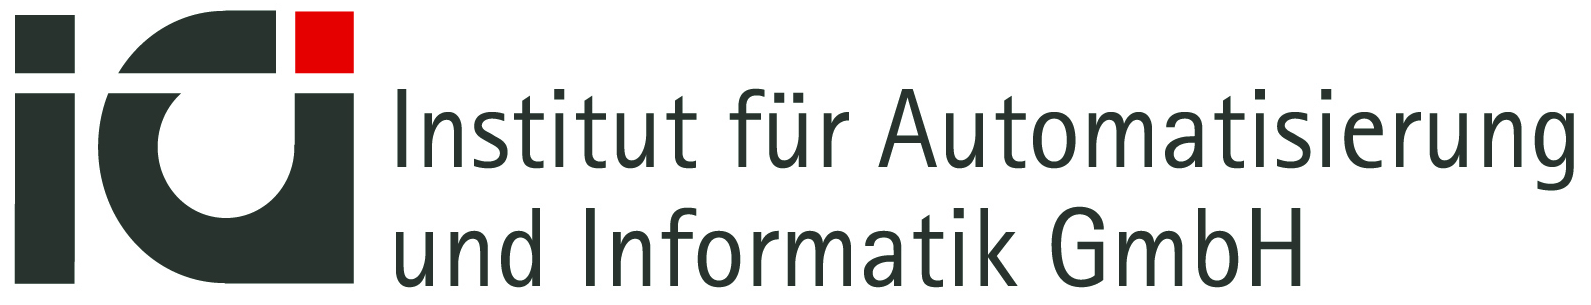 Institut für Automatisierung und Informatik GmbH